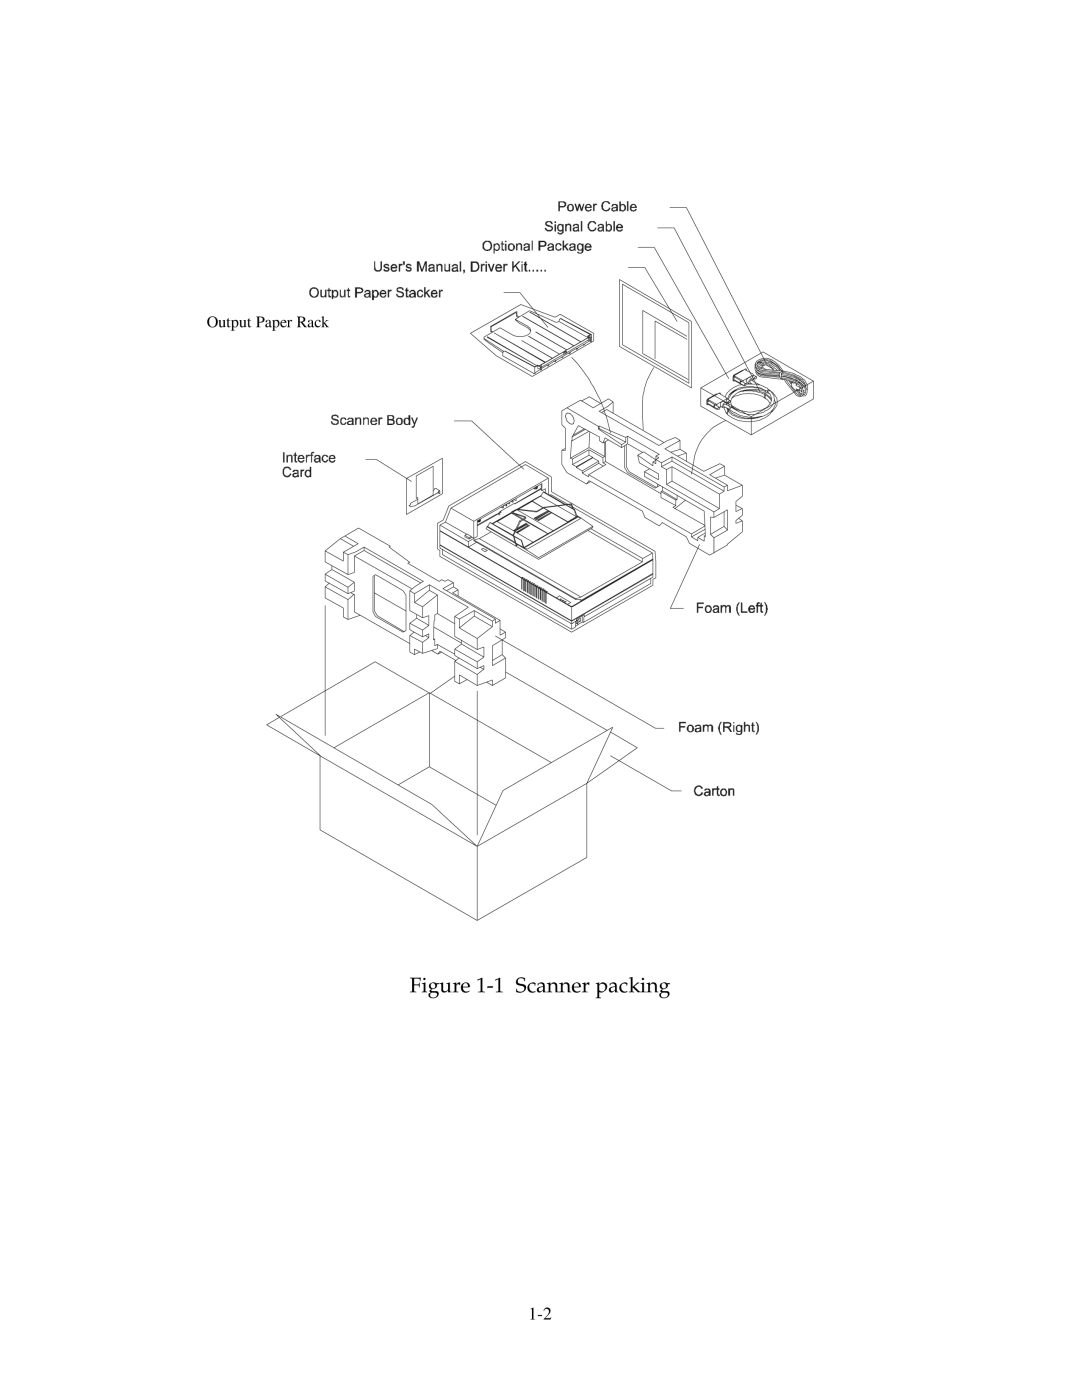 Fujitsu 15C user manual 1 Scanner packing, Output Paper Rack 